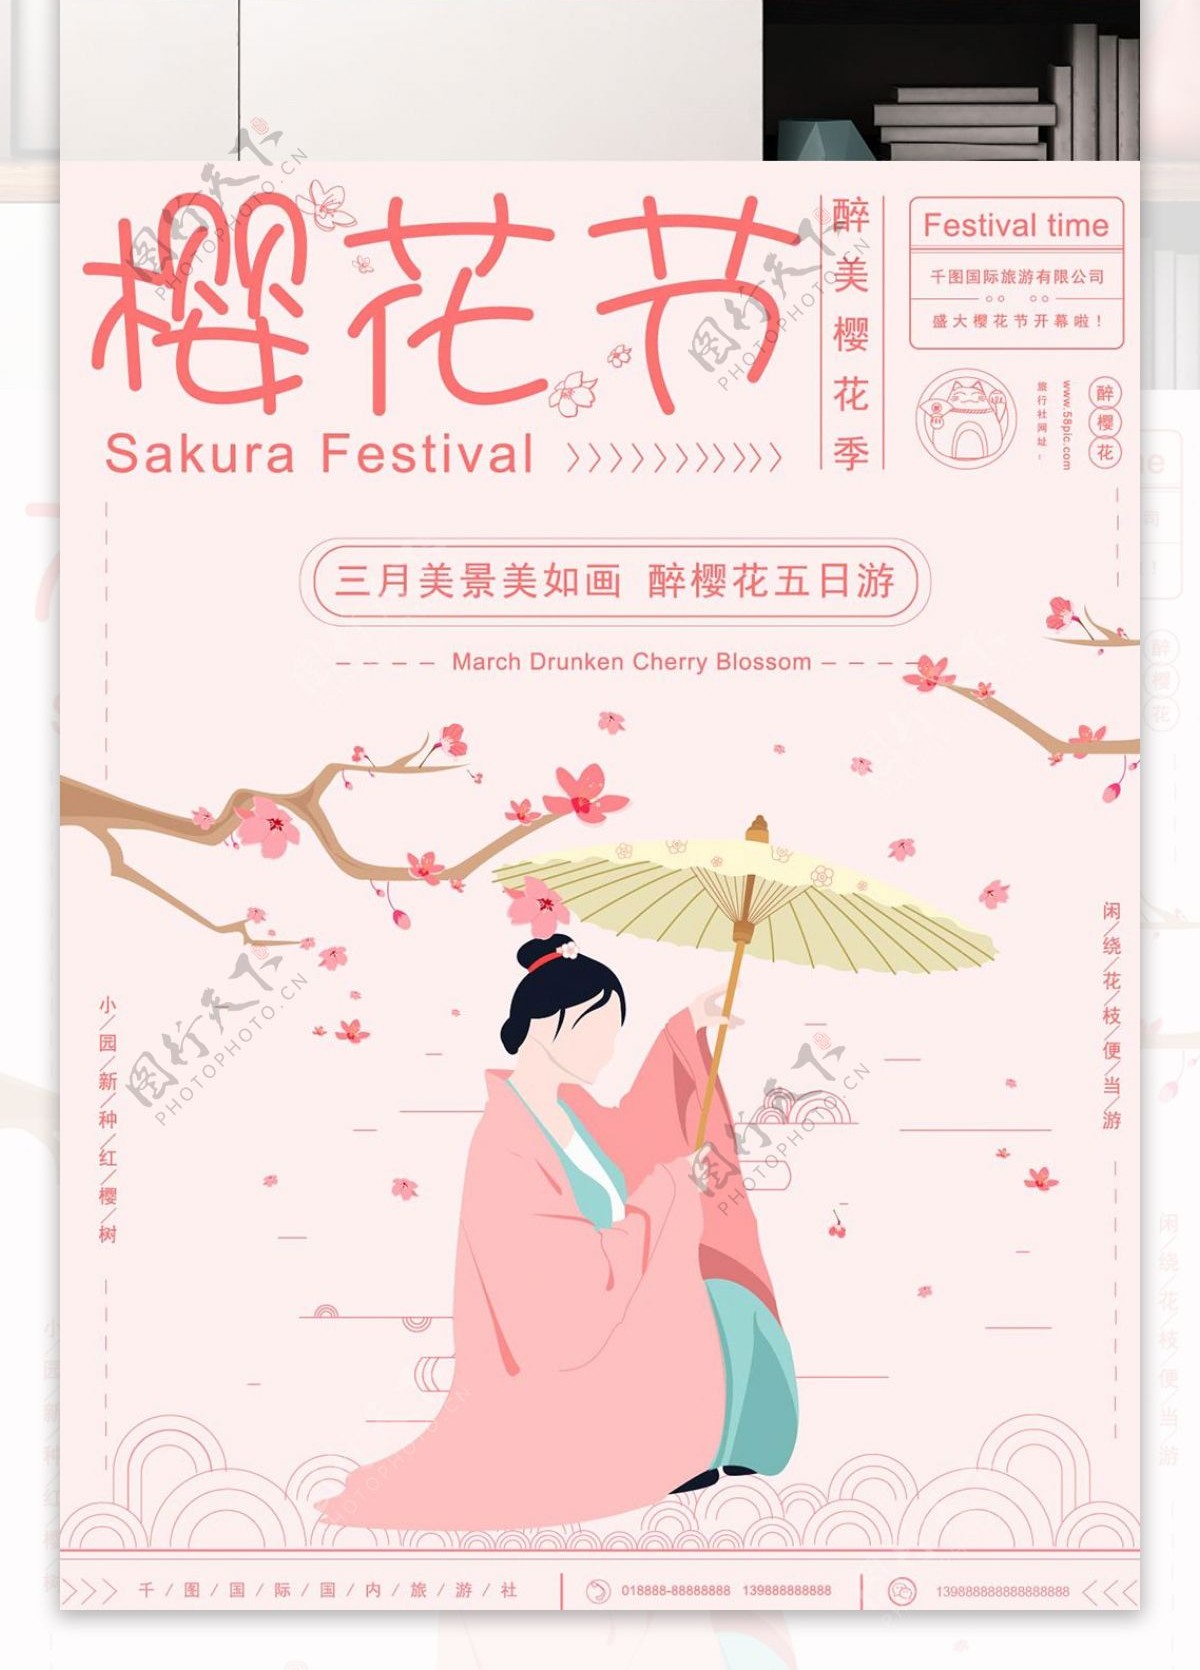 原创手绘小清新樱花节旅游宣传海报